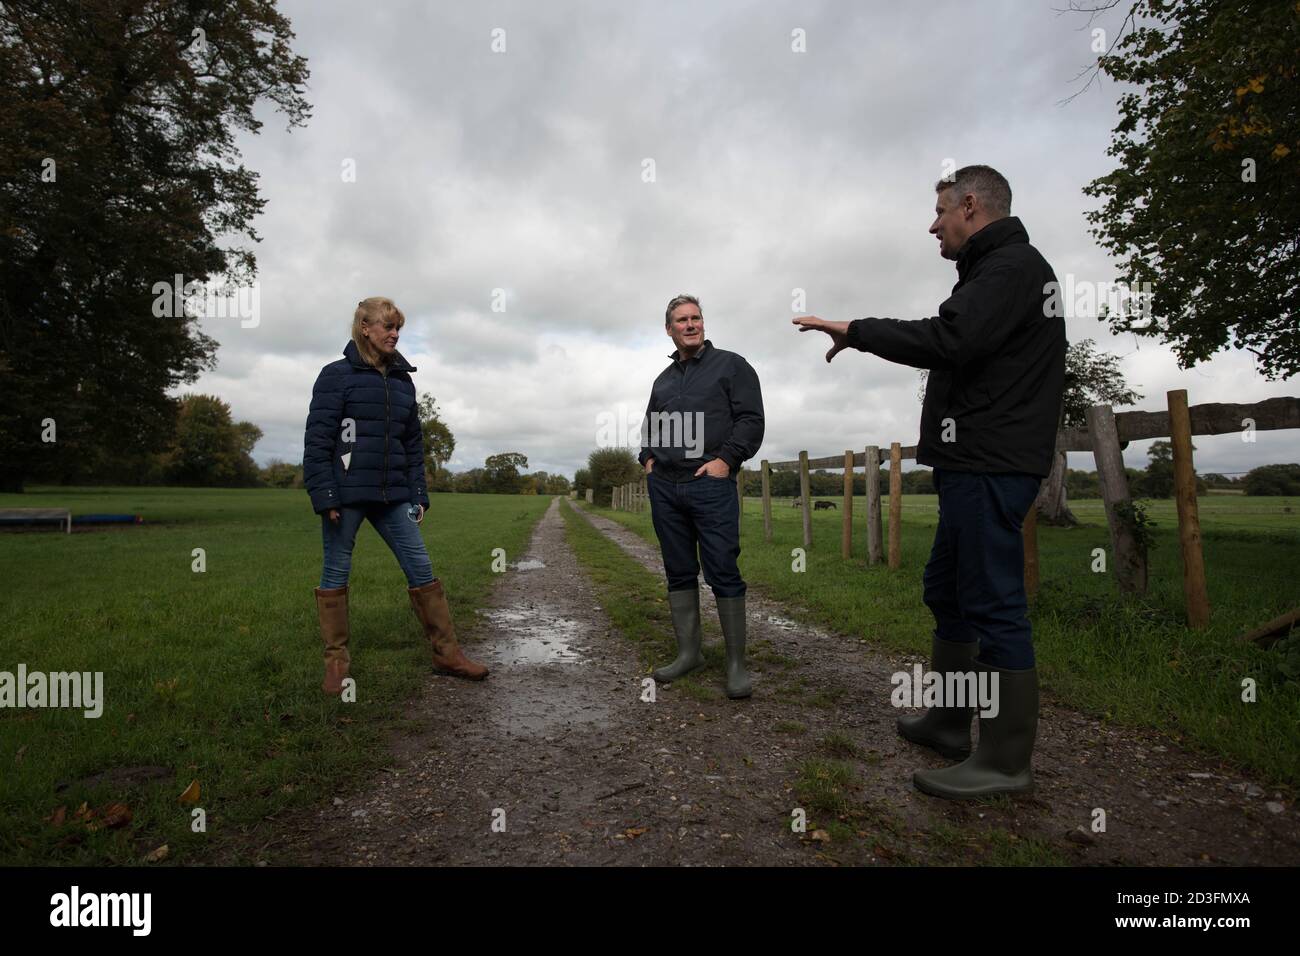 Il leader del lavoro Sir Keir Starmer durante una visita alla fattoria del presidente dell'Unione degli agricoltori nazionali Minette Batters nel Wiltshire, come ha invitato il primo ministro a sostenere gli agricoltori britannici garantendo gli elevati standard di cibo e agricoltura del Regno Unito dopo la Brexit. Foto Stock